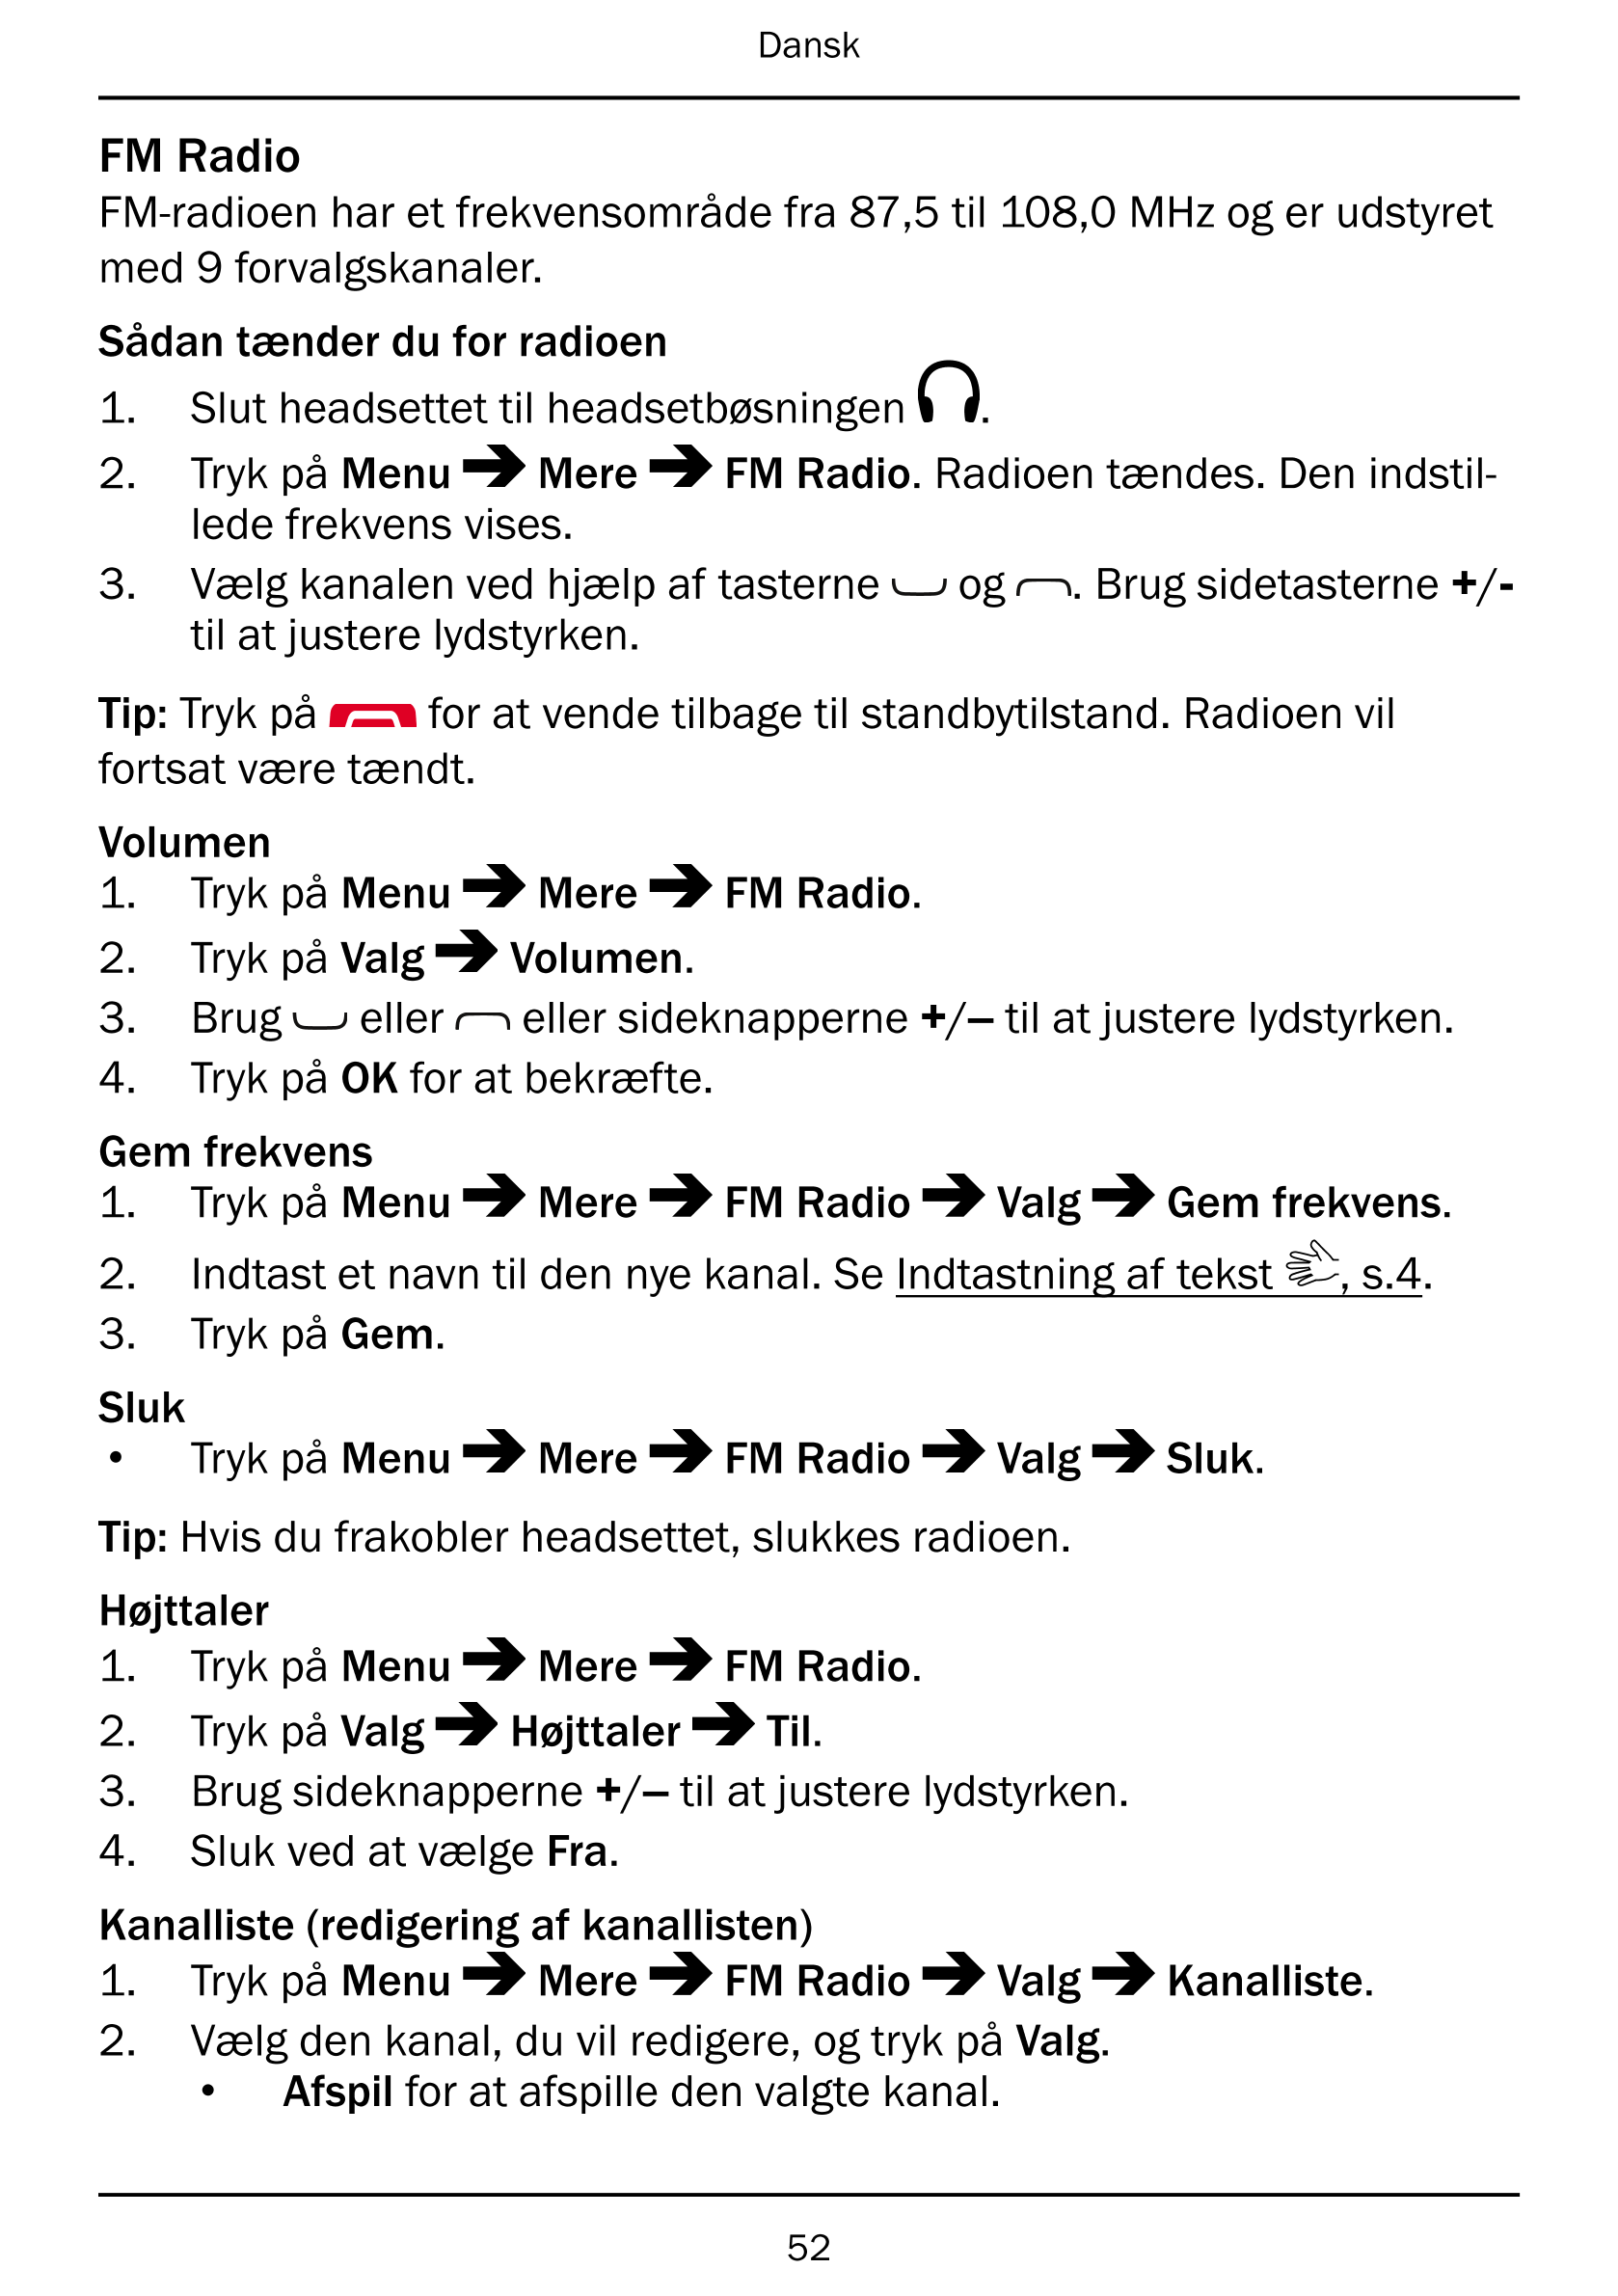 Dansk
FM Radio
FM-radioen har et frekvensområde fra 87,5 til 108,0 MHz og er udstyret
med 9 forvalgskanaler.
Sådan tænder du for